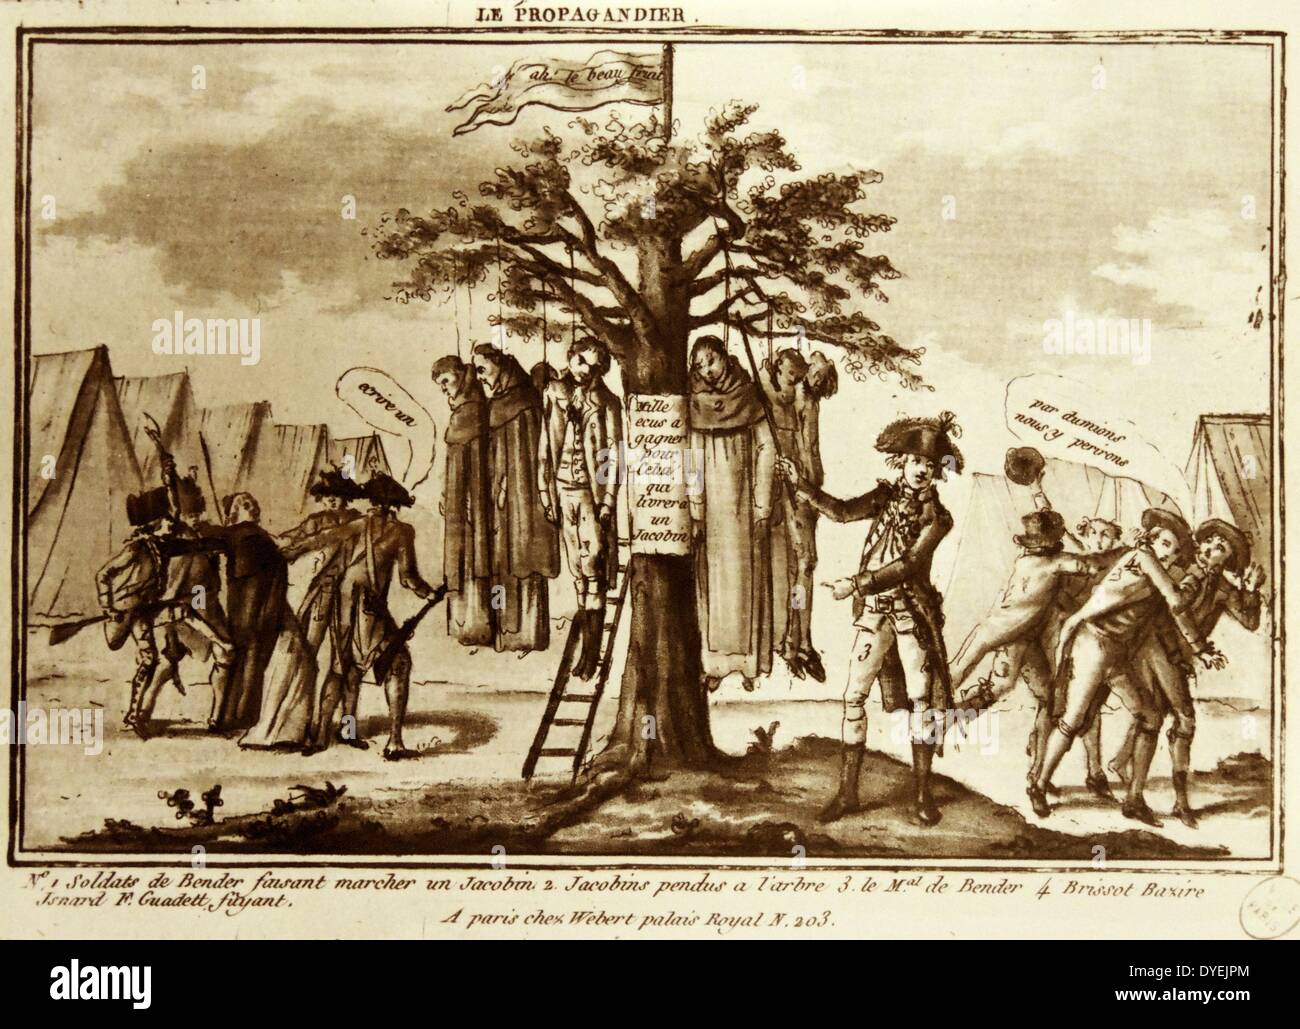 Imprimer de la capture de jacobins, intitulé "L'arbre de la propagande'(le)Propagandier Artiste ou artisan inconnu. Date:07 avril 1792 l'aquatinte, la gravure sur papier, imprimé à l'encre brune. Banque D'Images